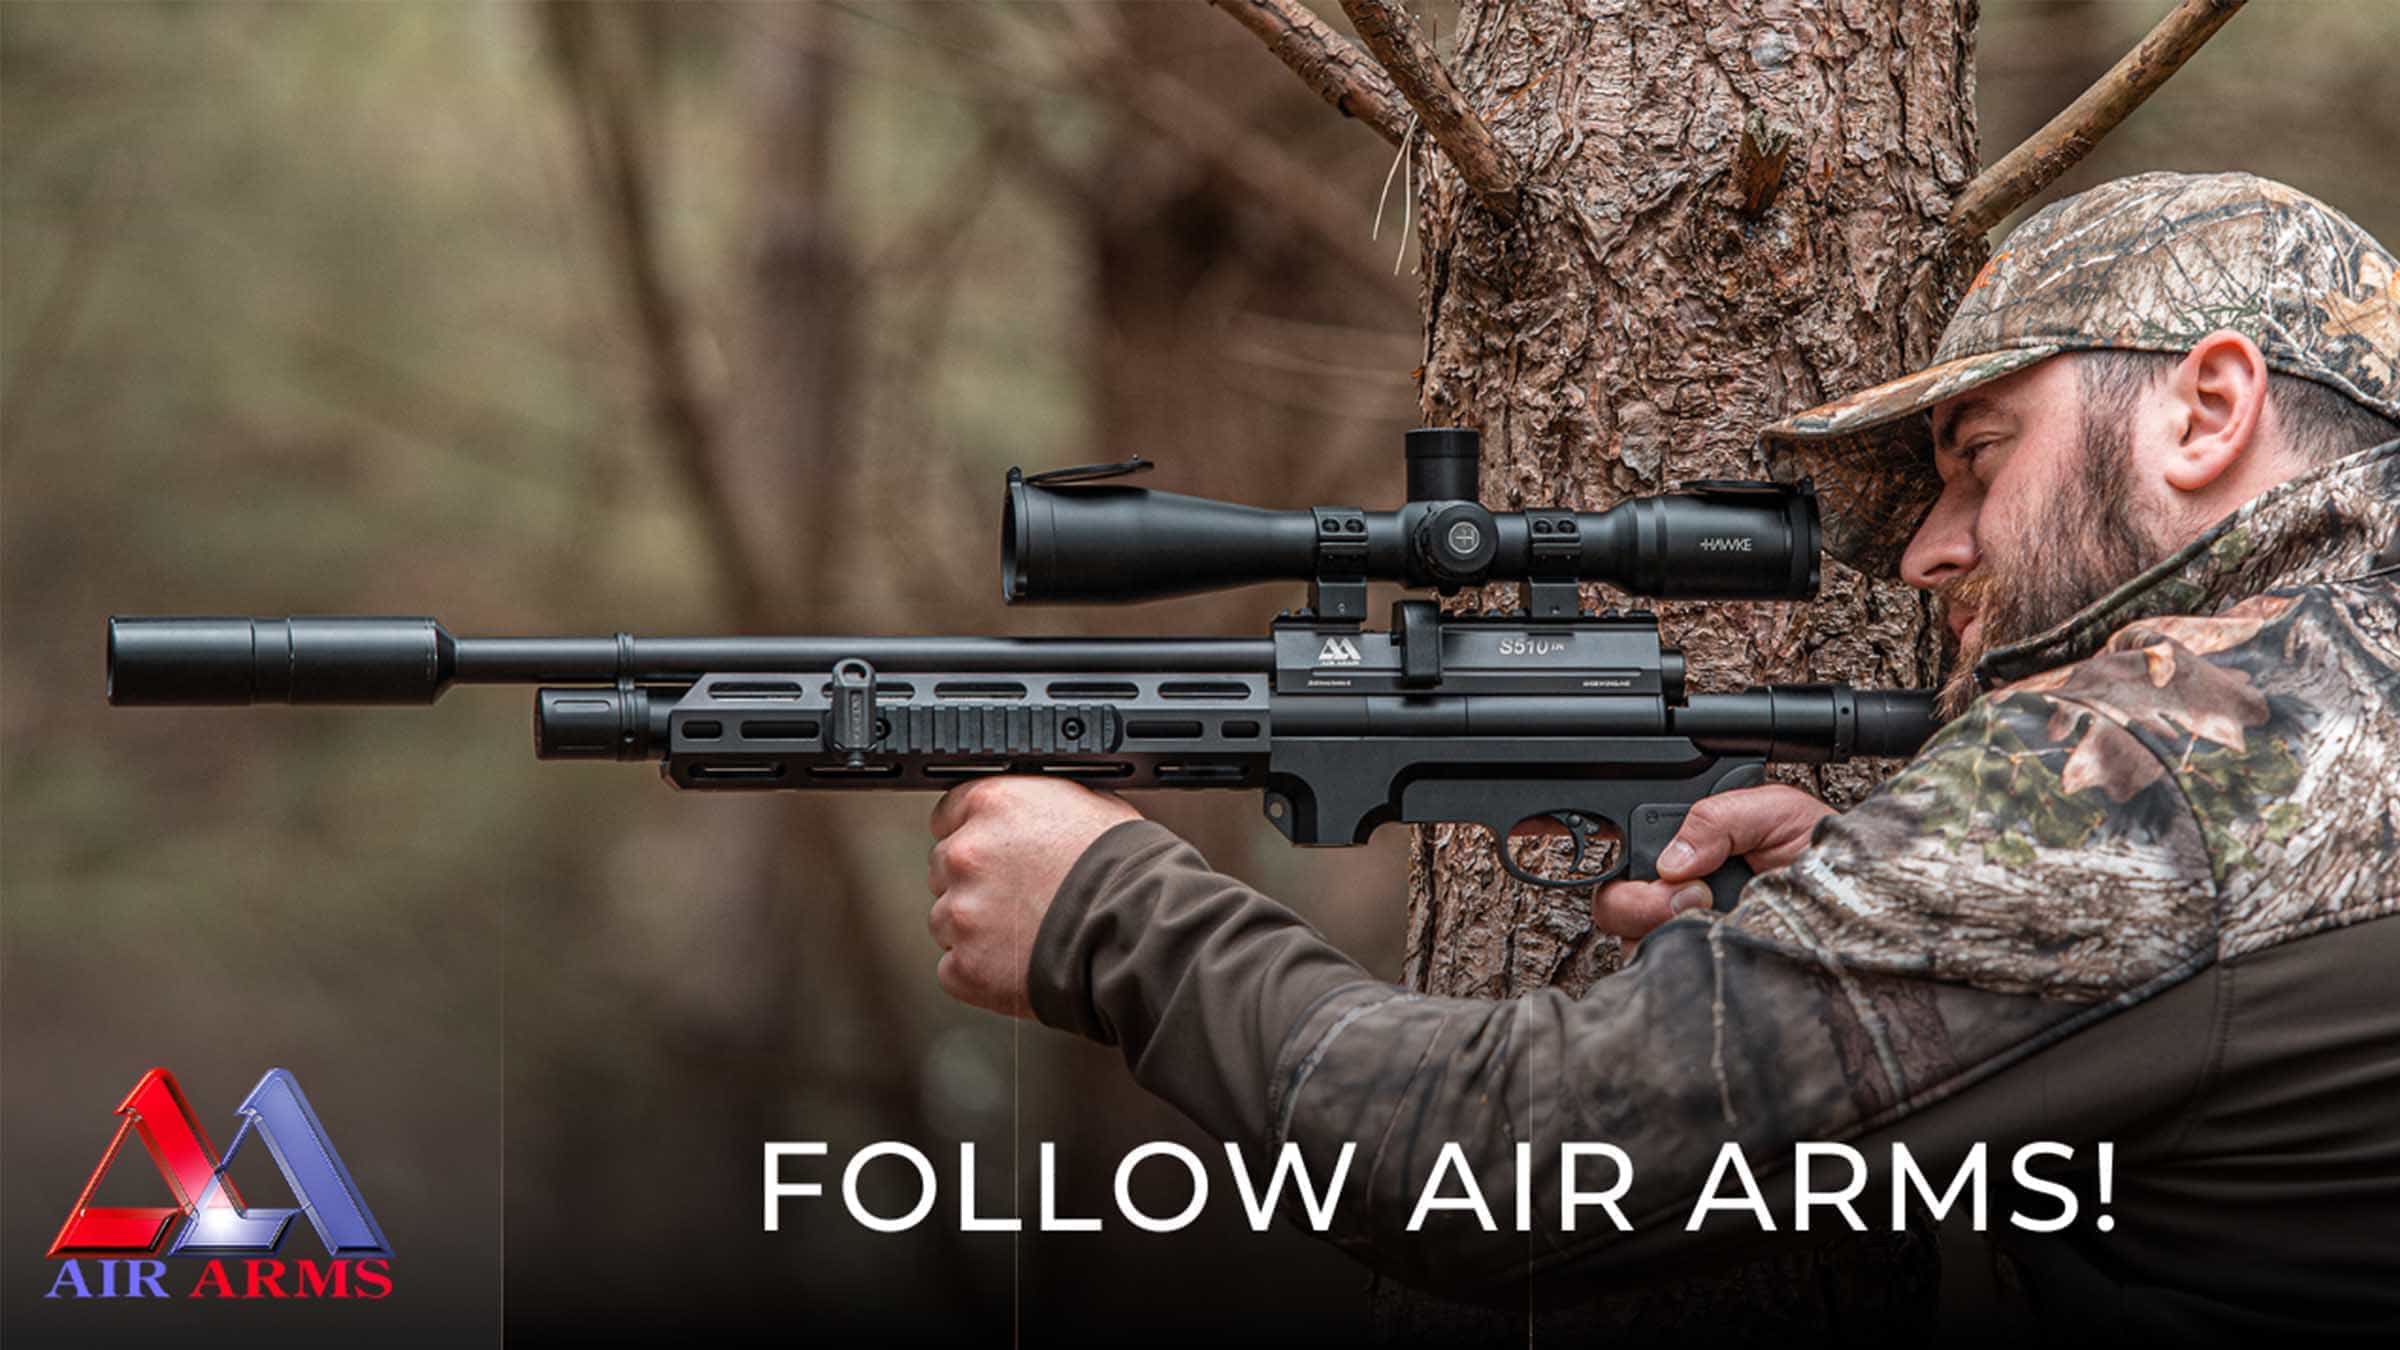 Follow Air Arms Across Social Media